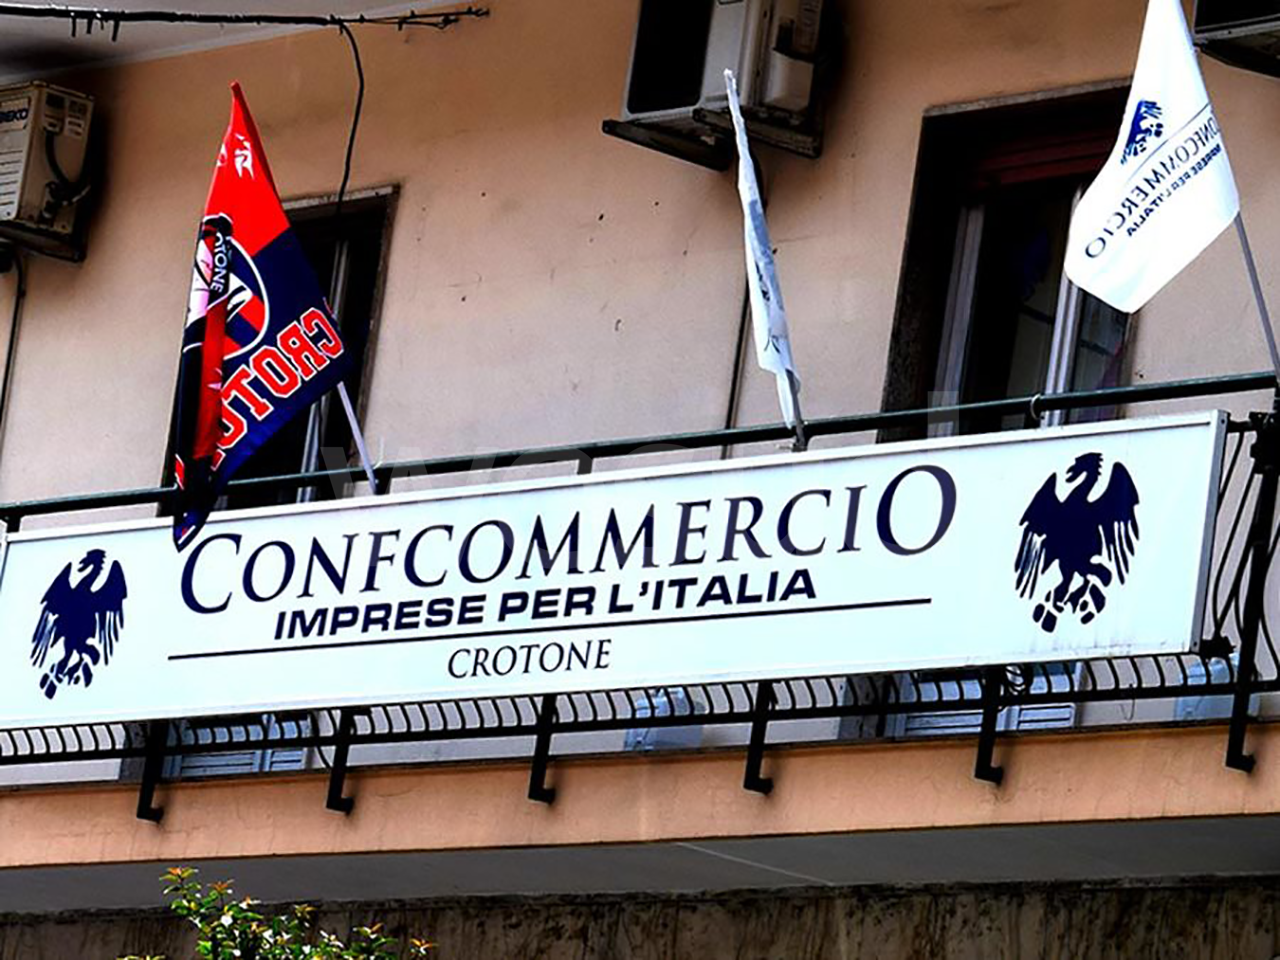 Capodanno a Crotone, Confcommercio incontra il comune e avvia il confronto a tutela degli operatori commerciali